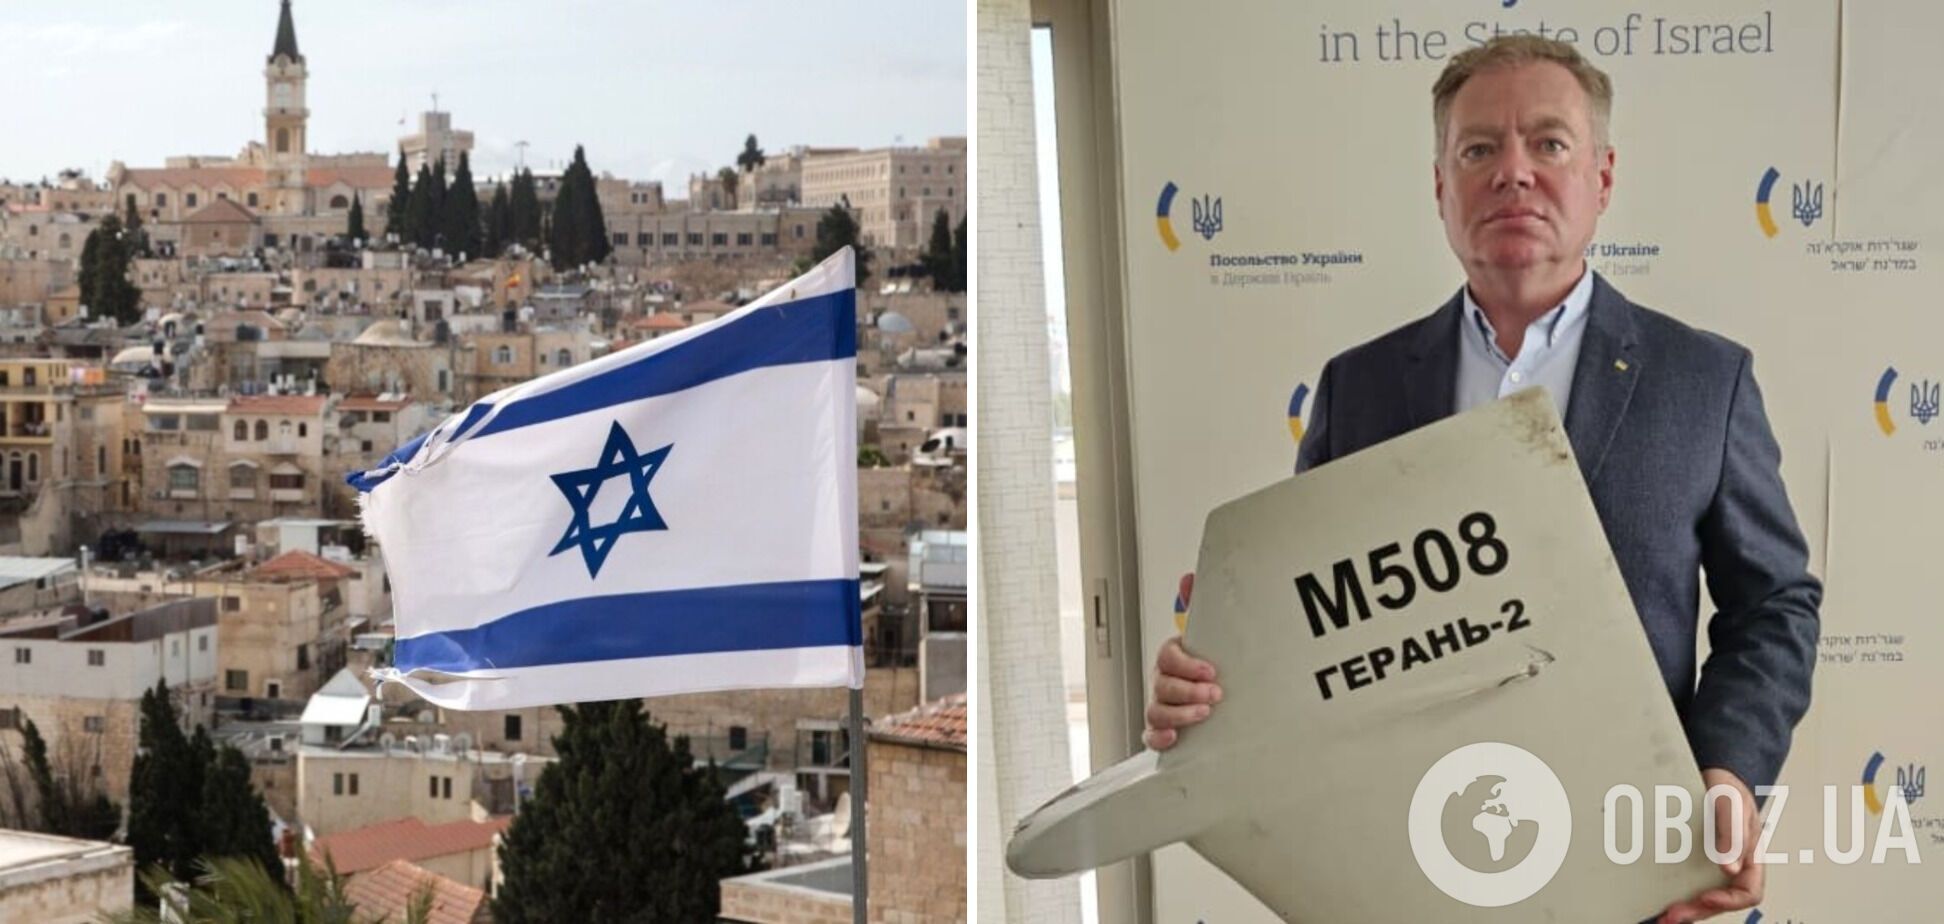 'У нас один ворог': посол Корнійчук розповів, як ізраїльському премʼєру передали уламок іранського 'Шахеду'
